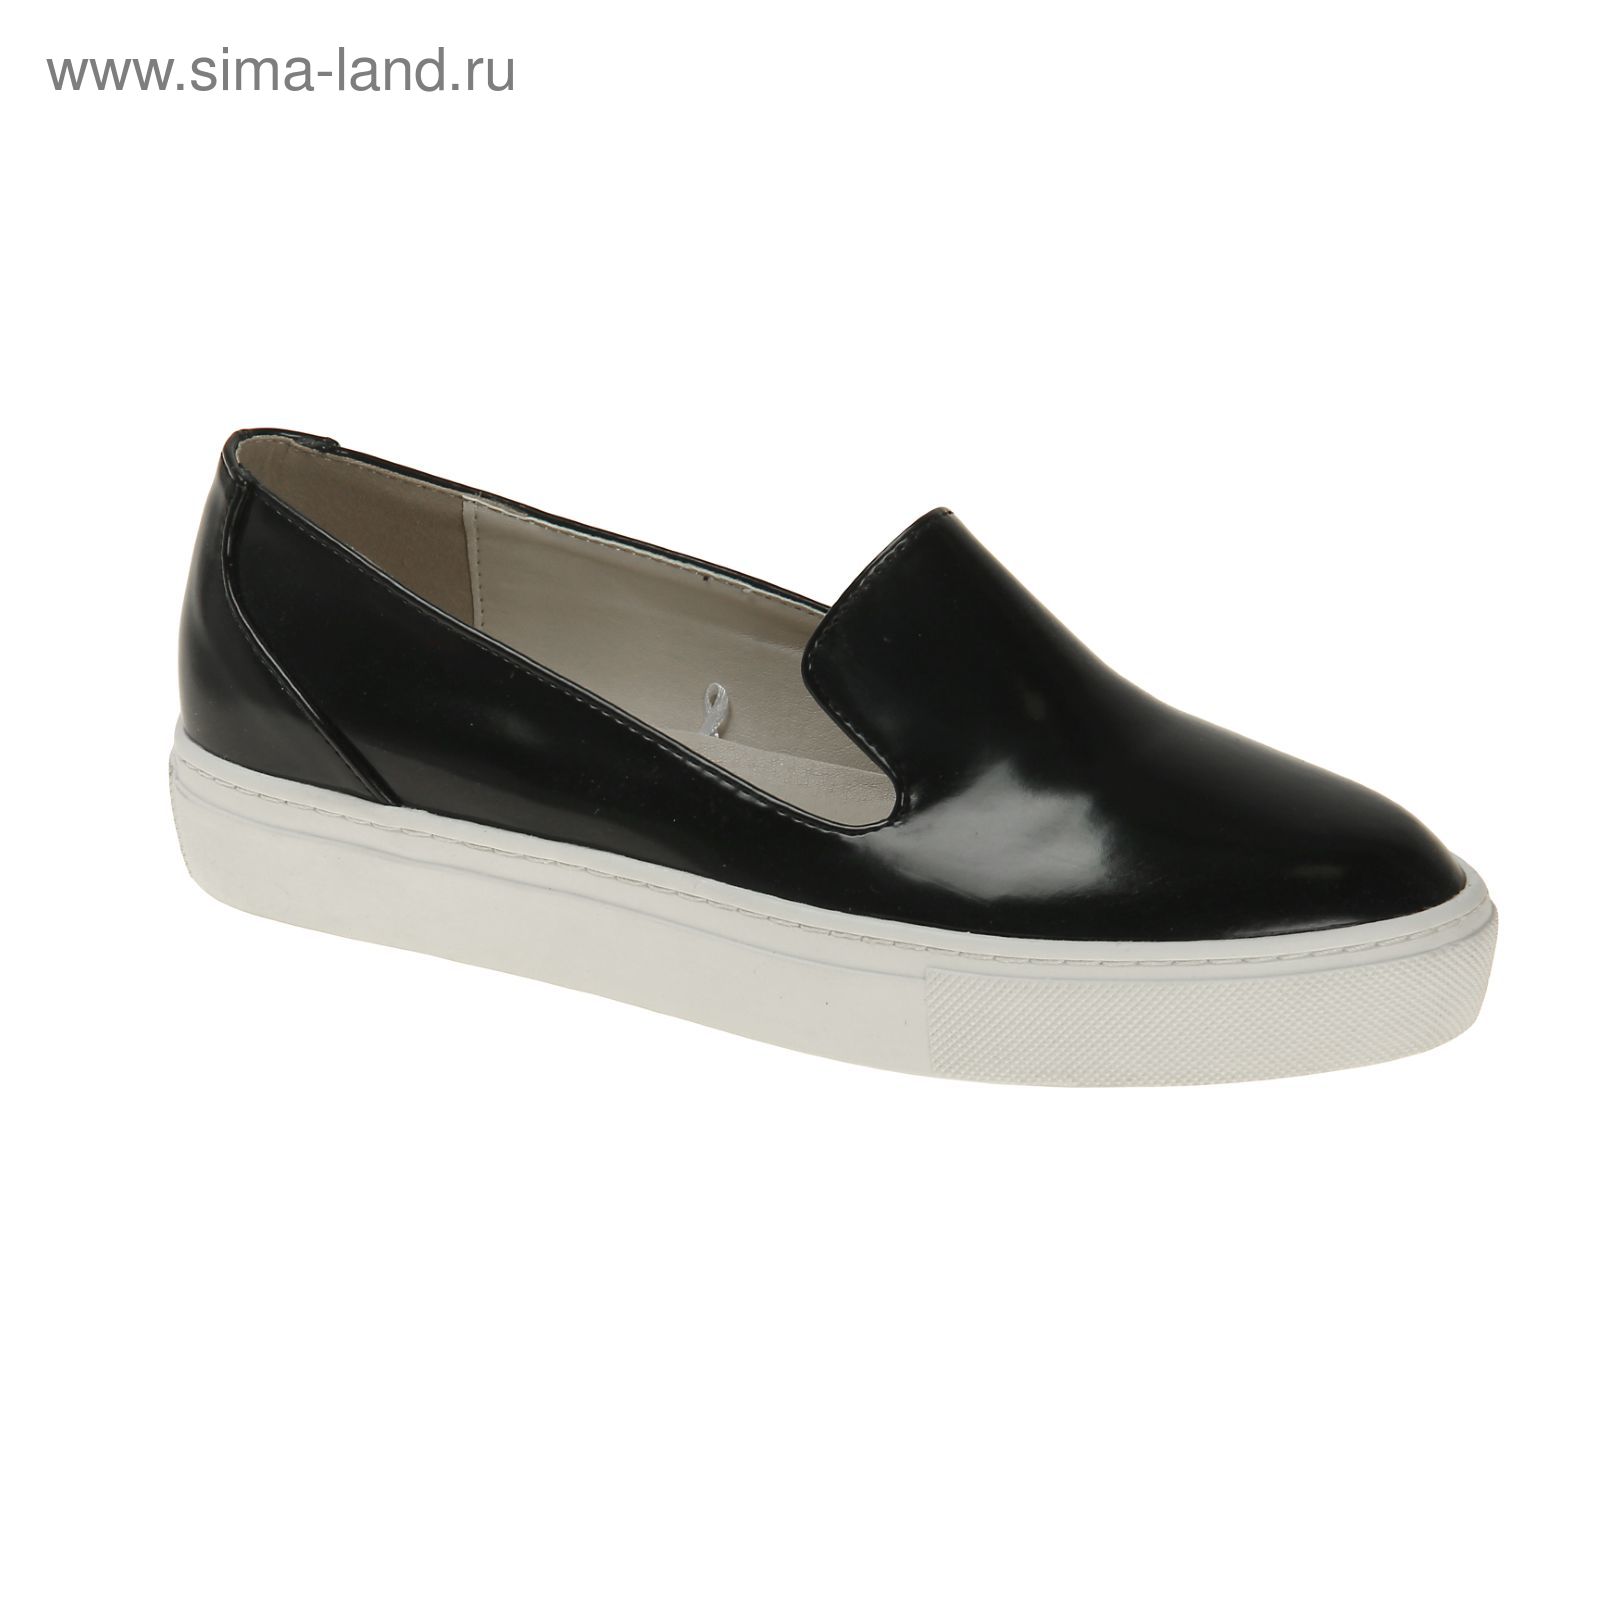 Туфли (слипоны) женские, цвет чёрный, размер 38 (арт. 1616033019)